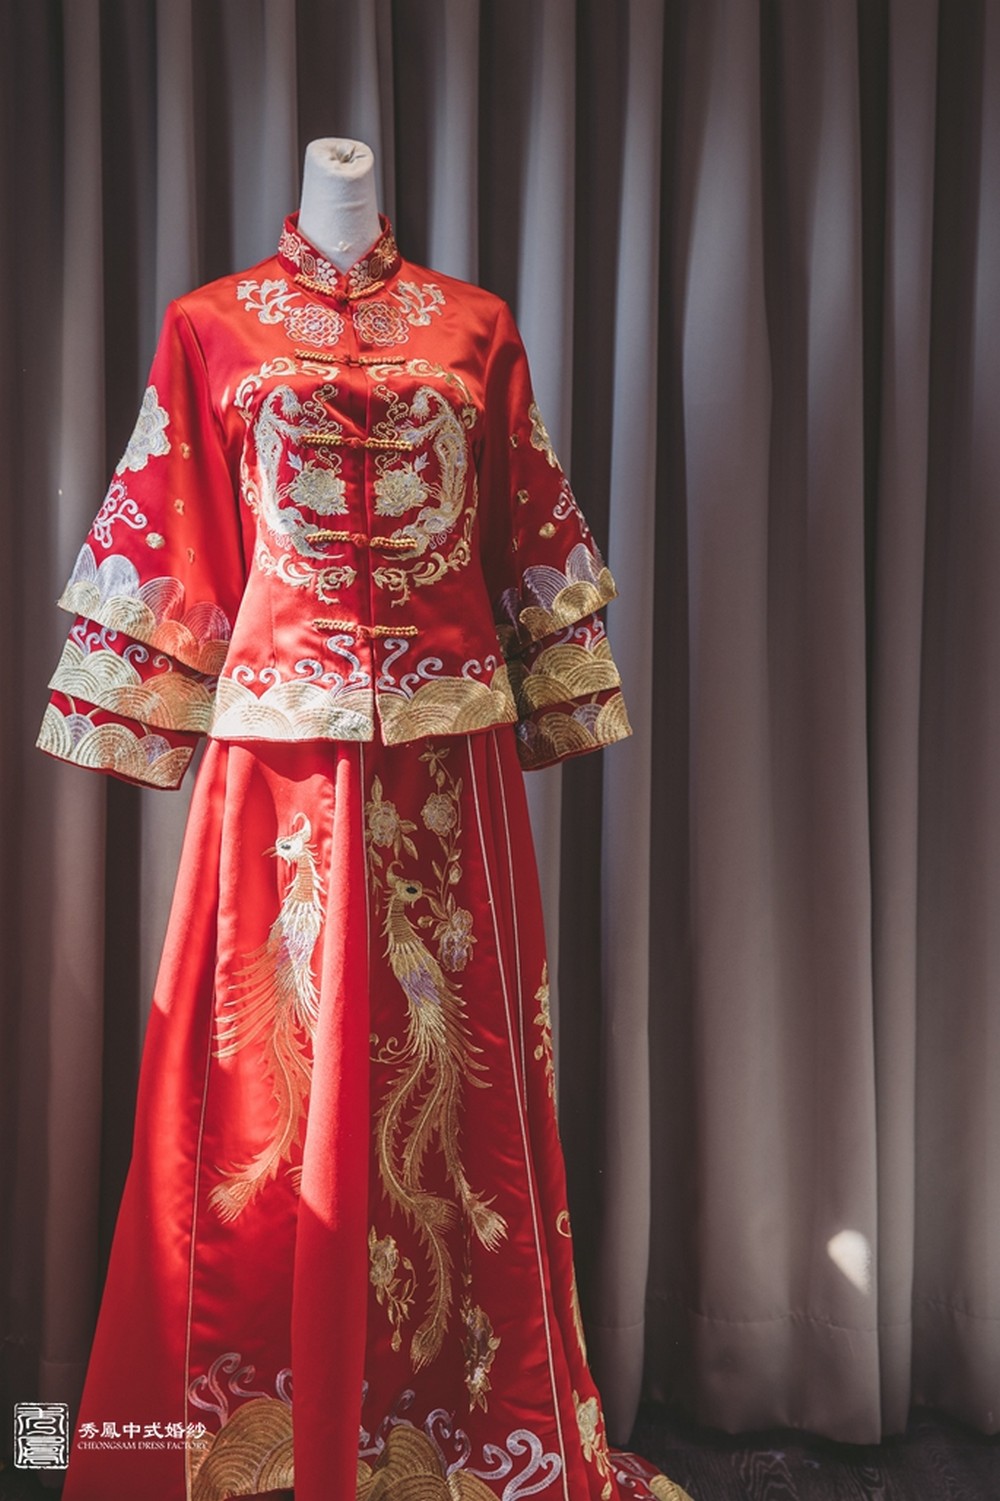 中式禮服,中式婚紗,龍鳳褂,秀禾服,旗袍,中式旗袍,中式婚紗照,中式婚紗攝影,中式婚紗風格,中式禮服婚紗